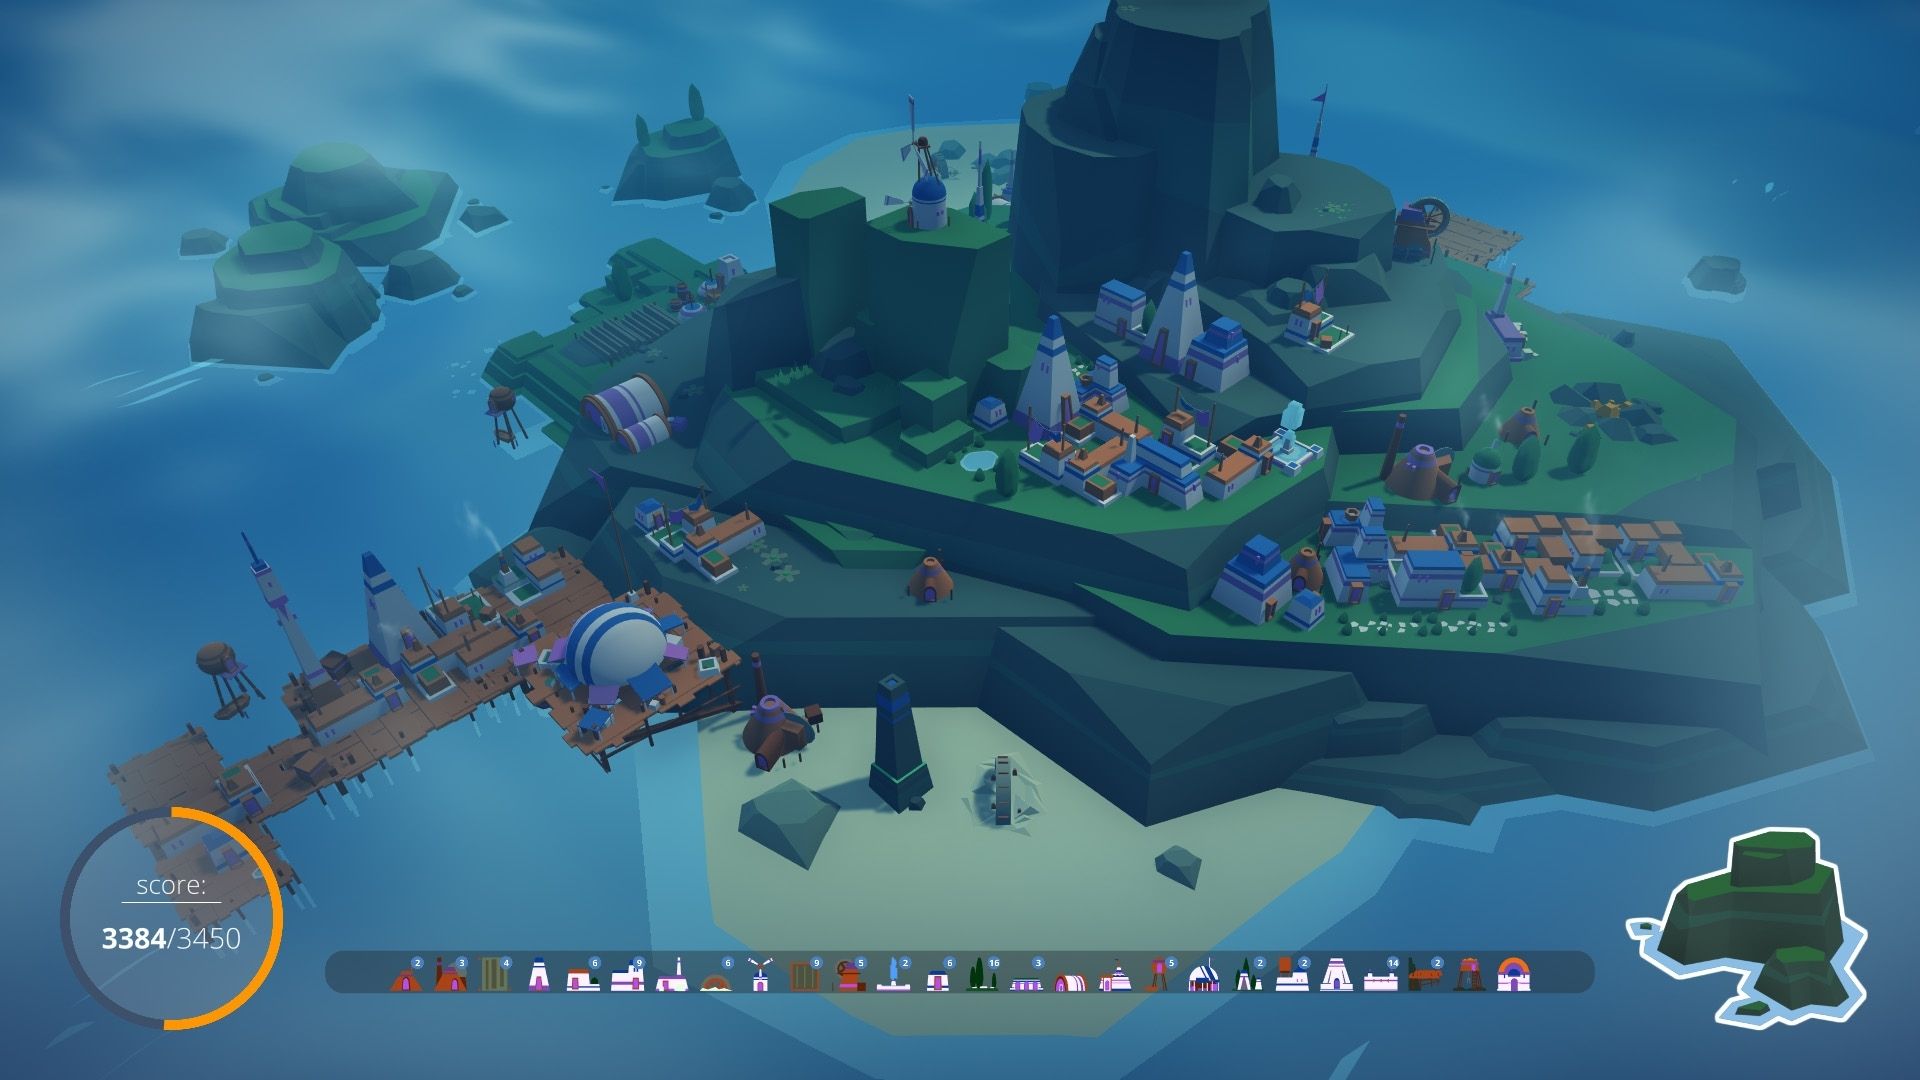 Скриншот от островитян, показывающий большой остров с некоторыми домами и портом